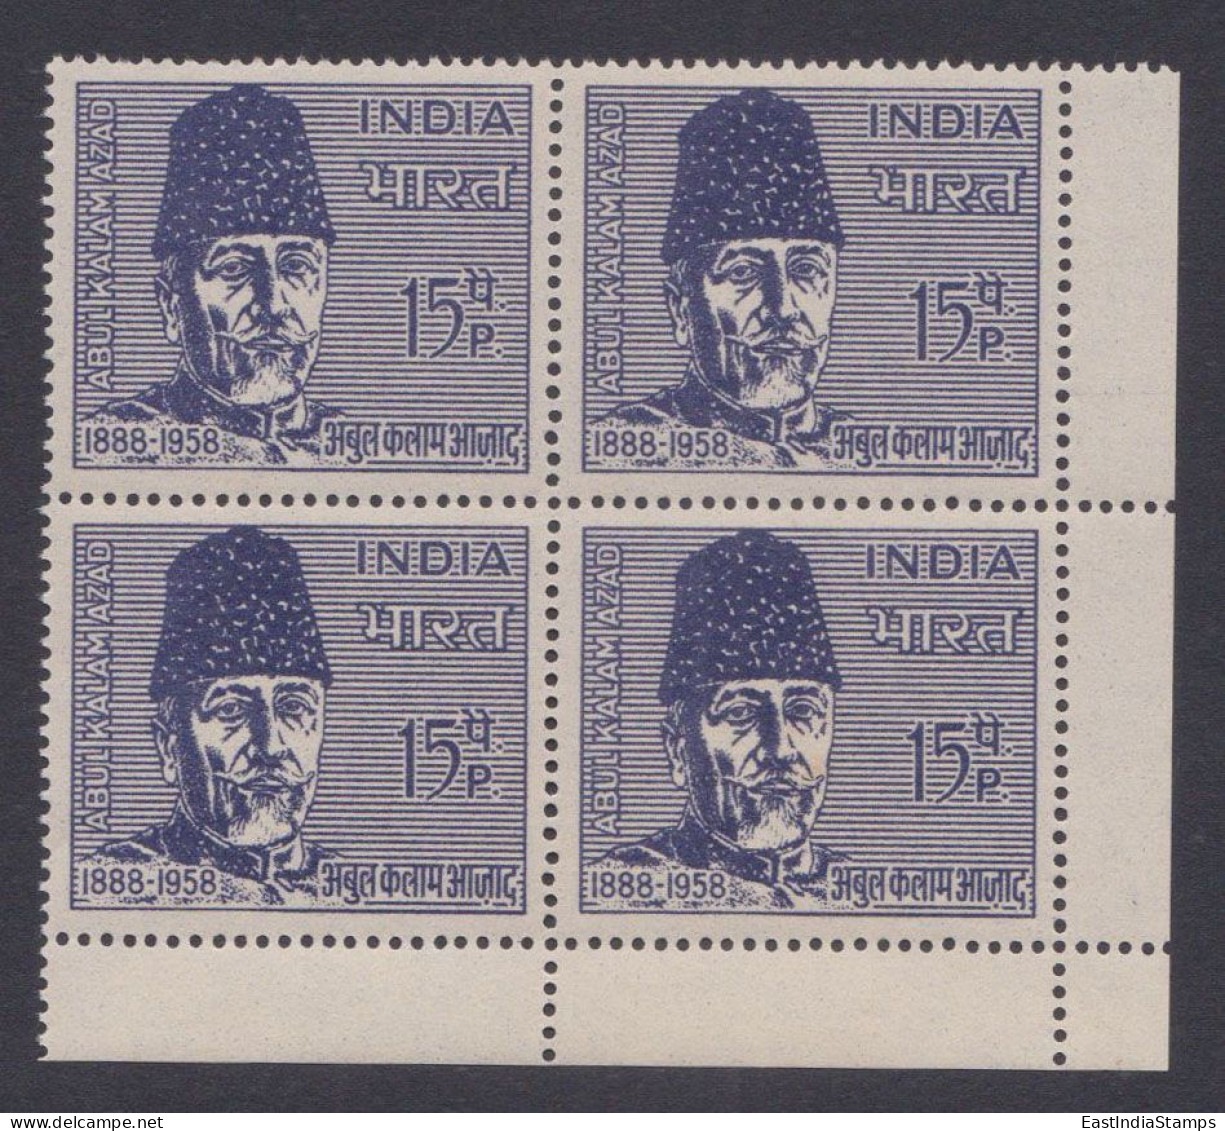 Inde India 1966 MNH Maulana Abul Kalam Azad, Indian Independence Leader, Muslim Politician, Writer, Congress, Block - Neufs